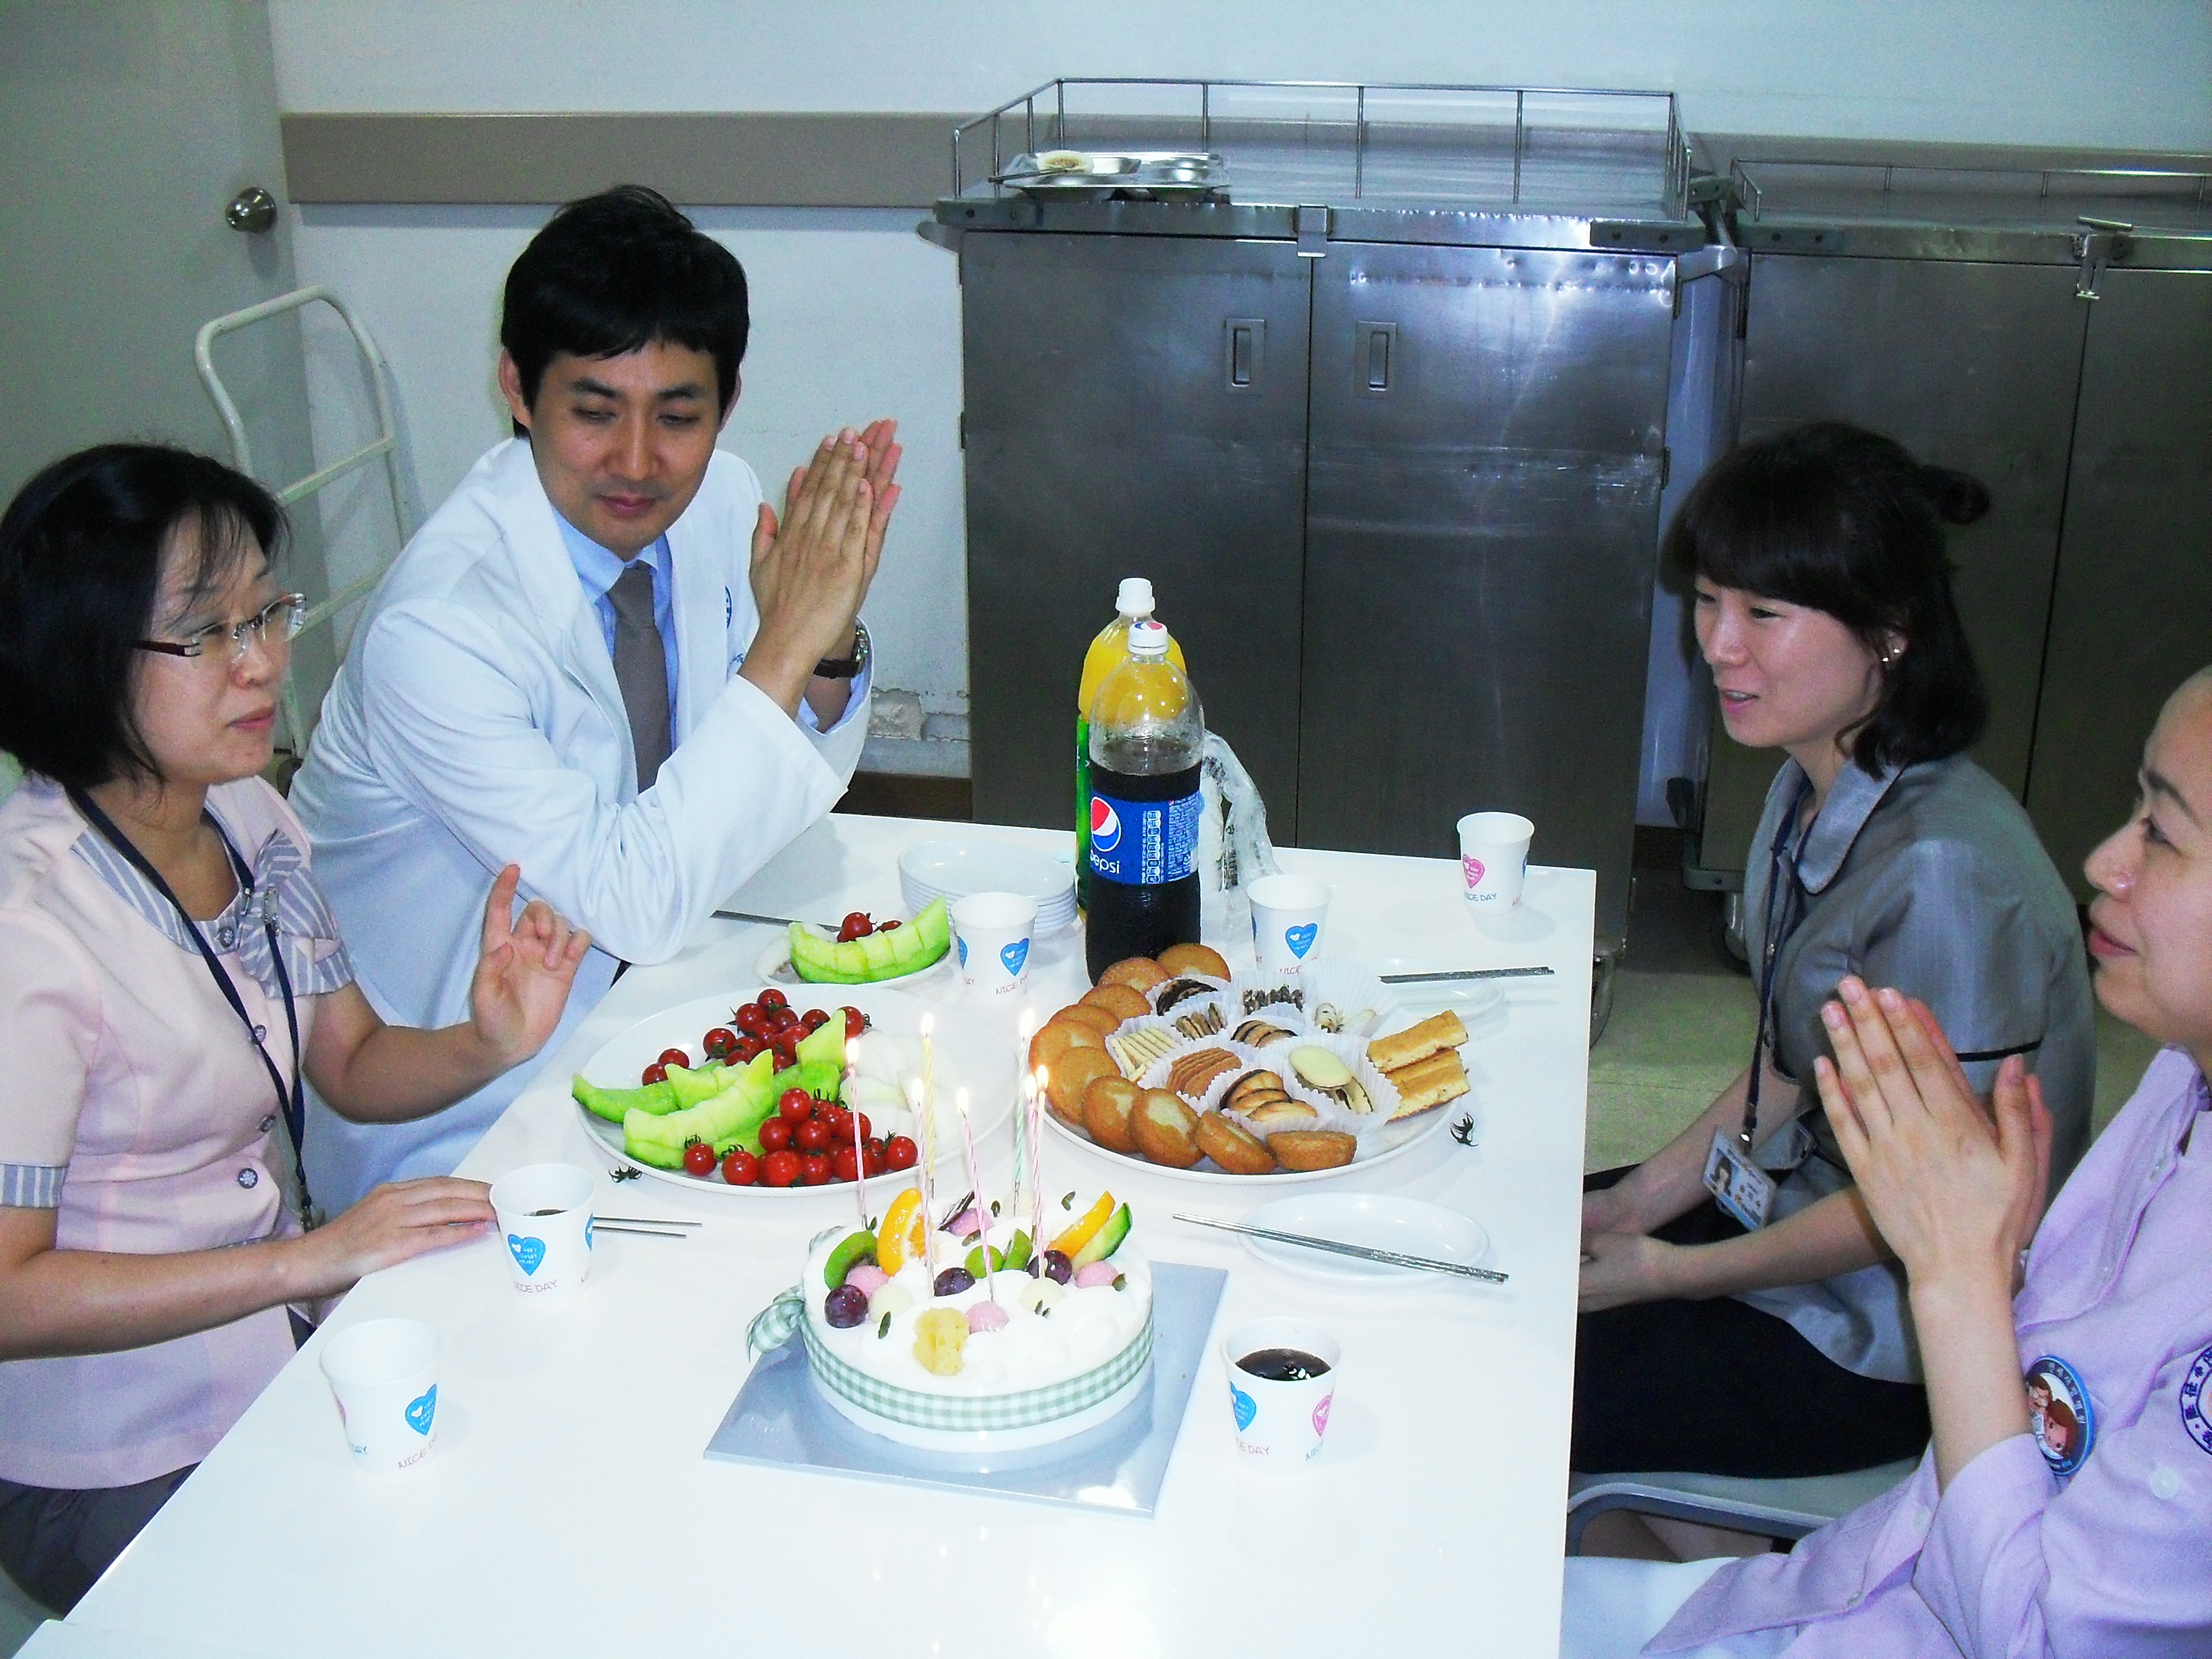 강남 1병원 7월 달 직원 생일파티 게시글의 4번째 첨부파일입니다.